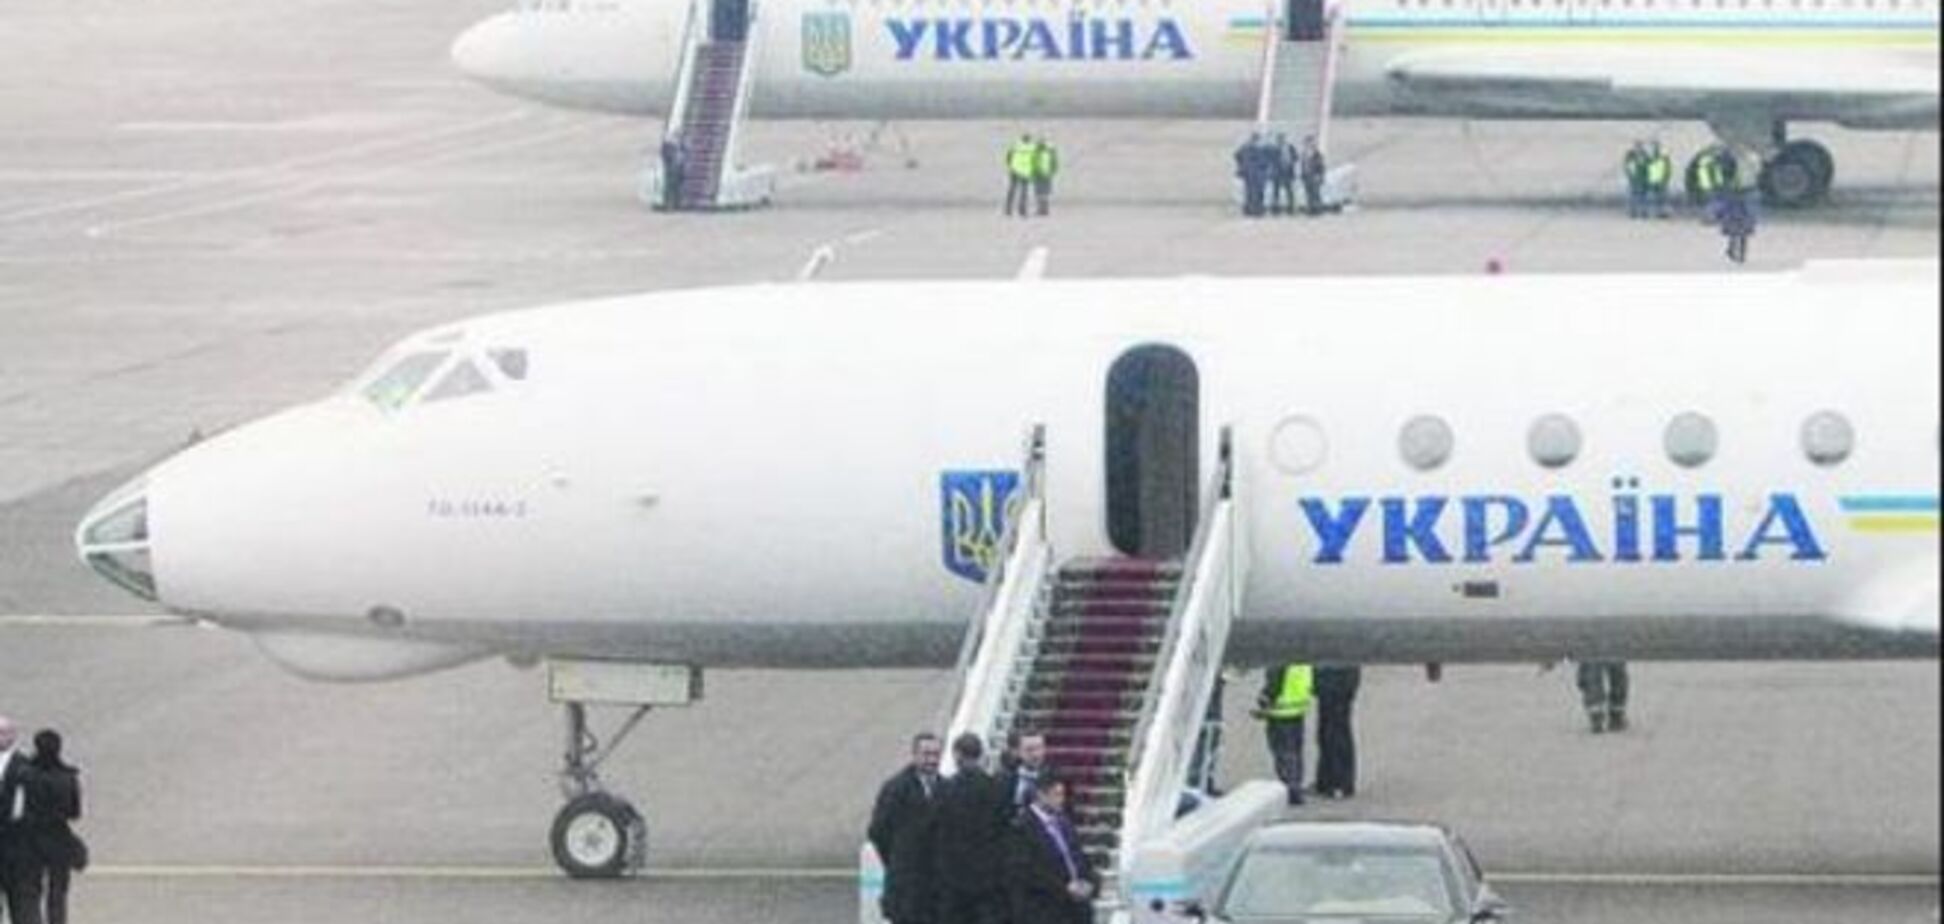 Каждый полет Азарова обходился госбюджету в 1 млн грн